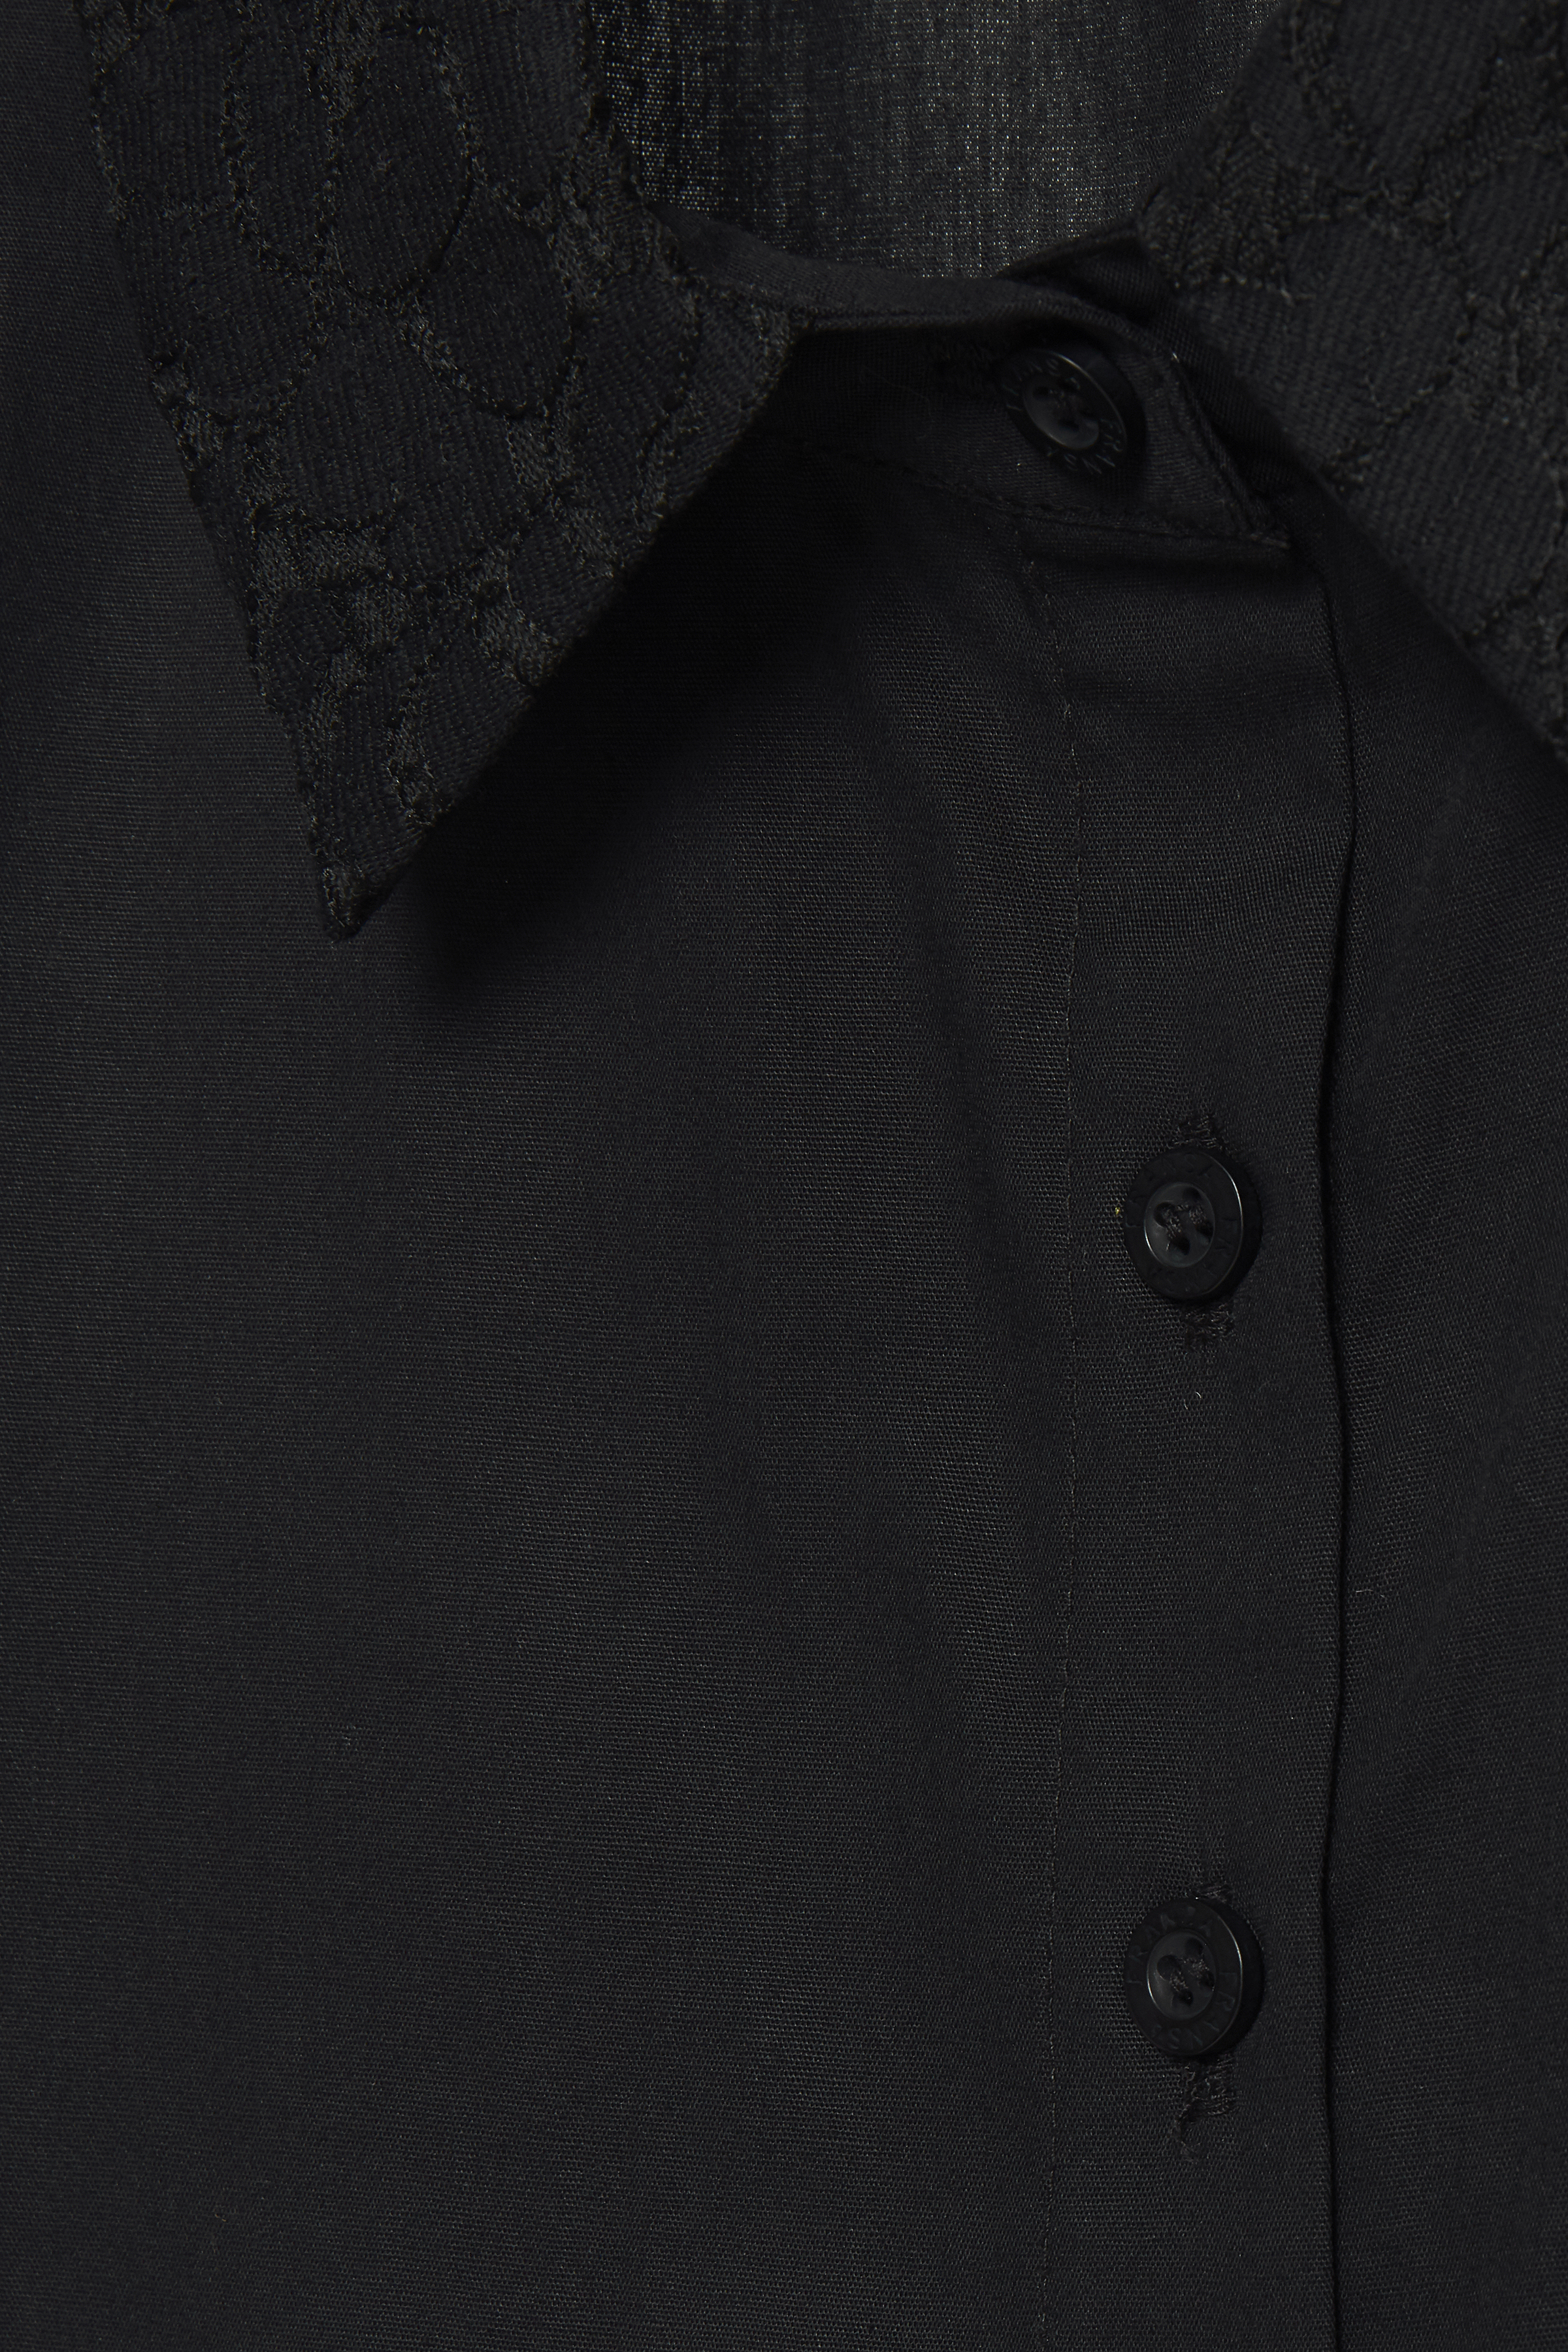  Shirt Collar, black, small/medium